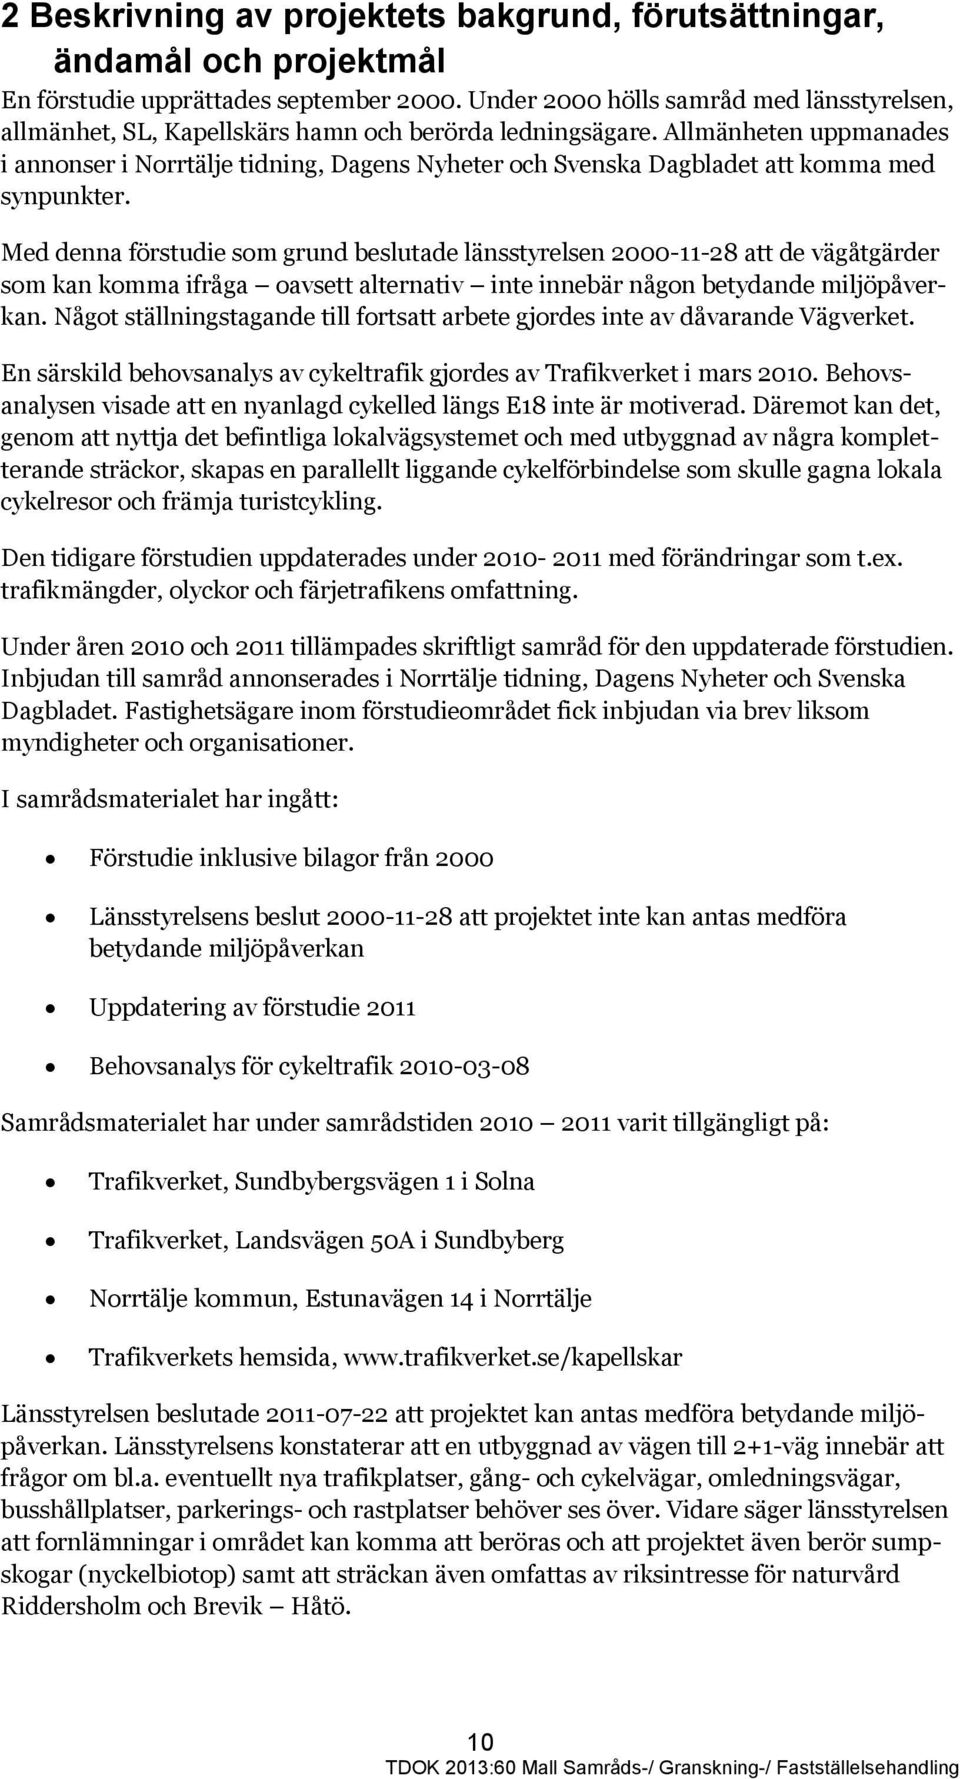 Allmänheten uppmanades i annonser i Norrtälje tidning, Dagens Nyheter och Svenska Dagbladet att komma med synpunkter.